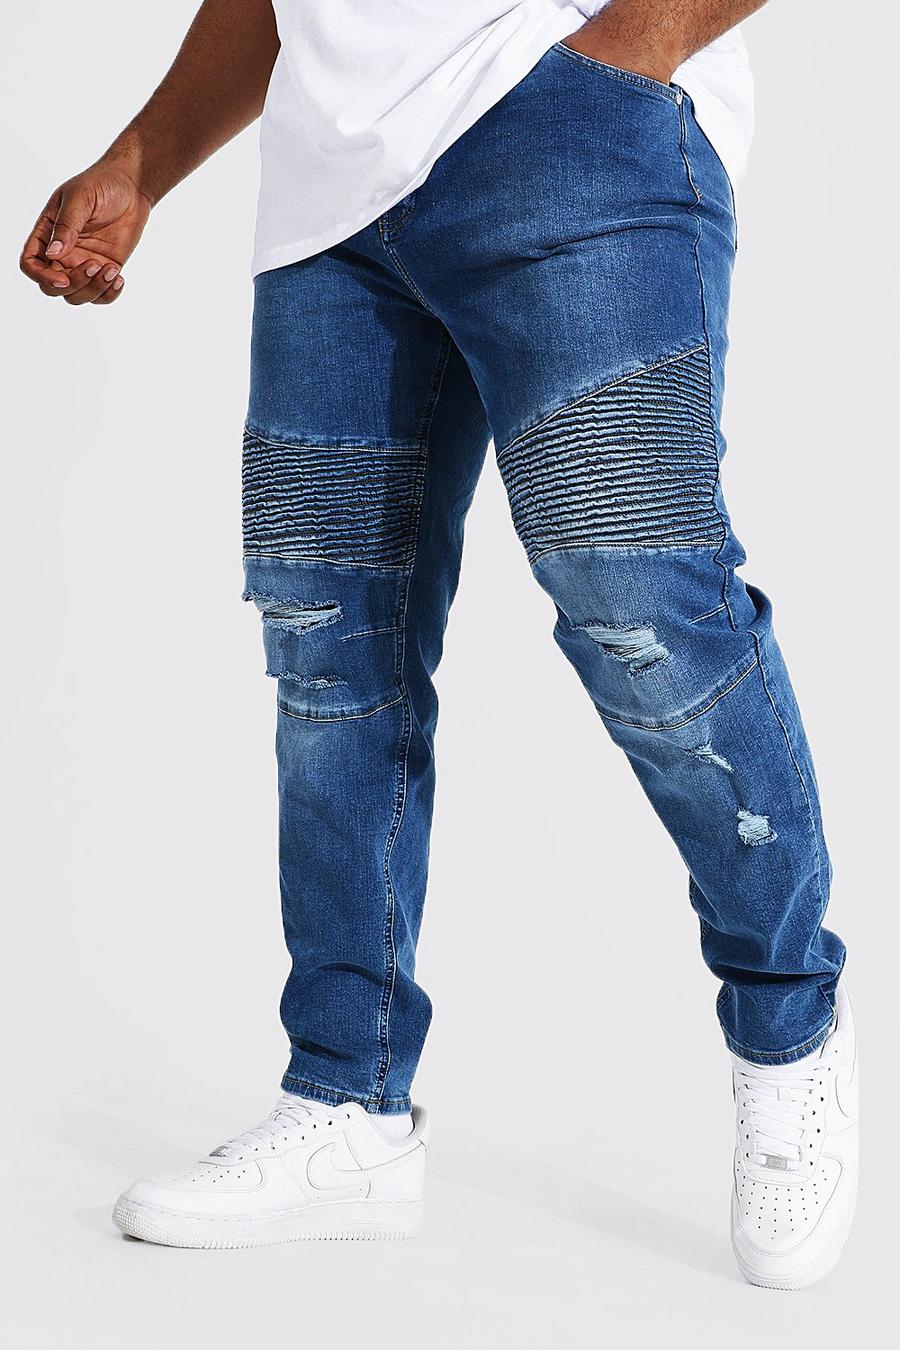 כחול ביניים סקיני ג'ינס אופנוענים עם שפשופים למידות גדולות image number 1